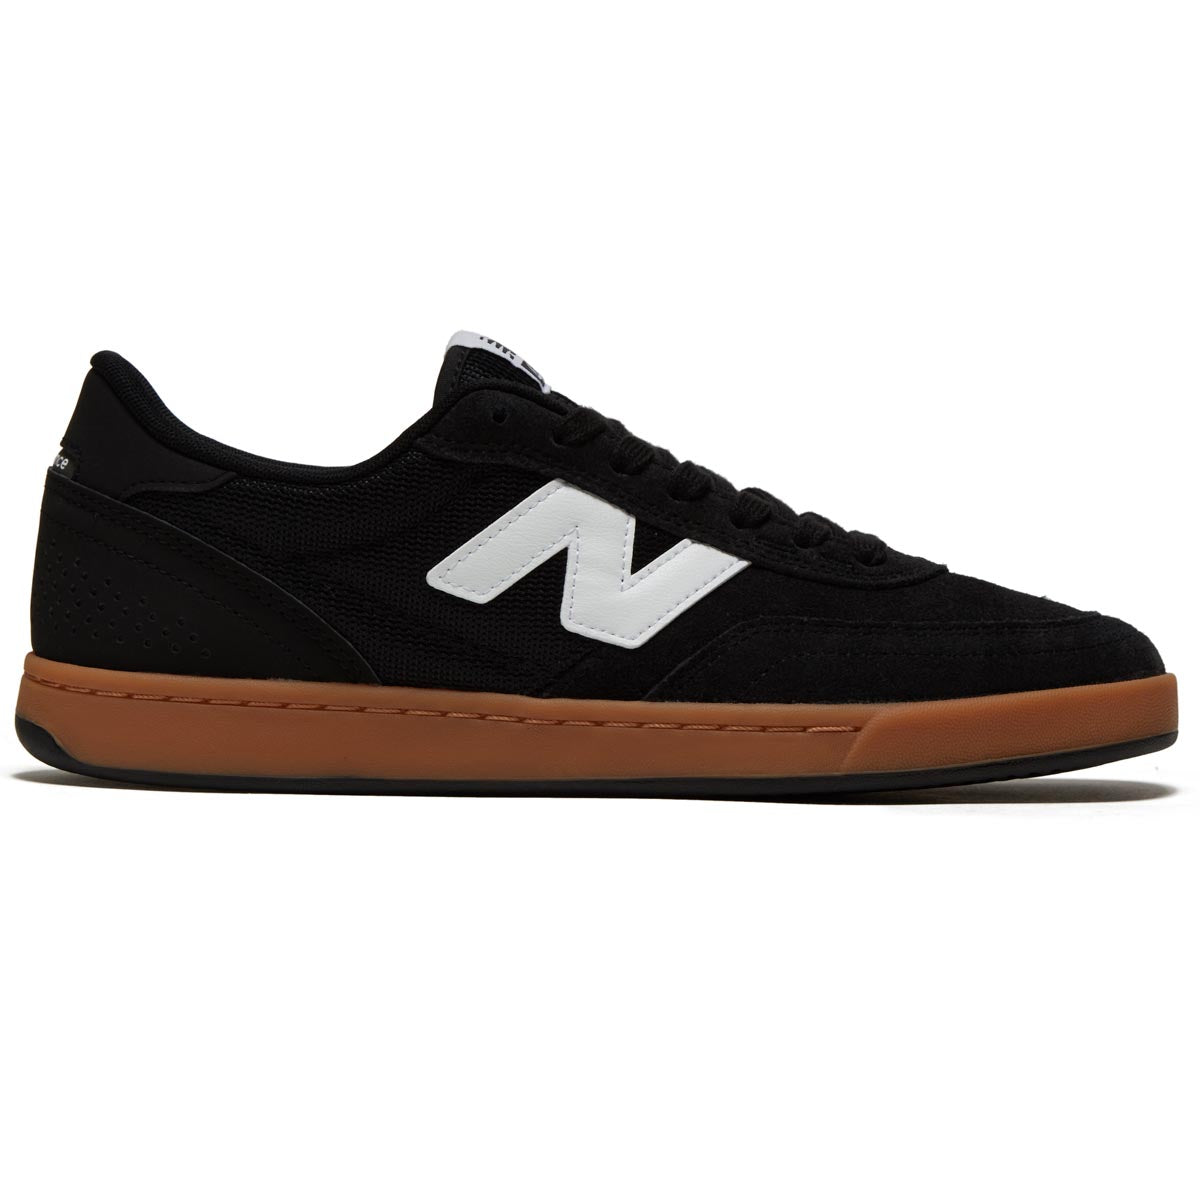 New Balance 440 V2 Shoes - Black image 1